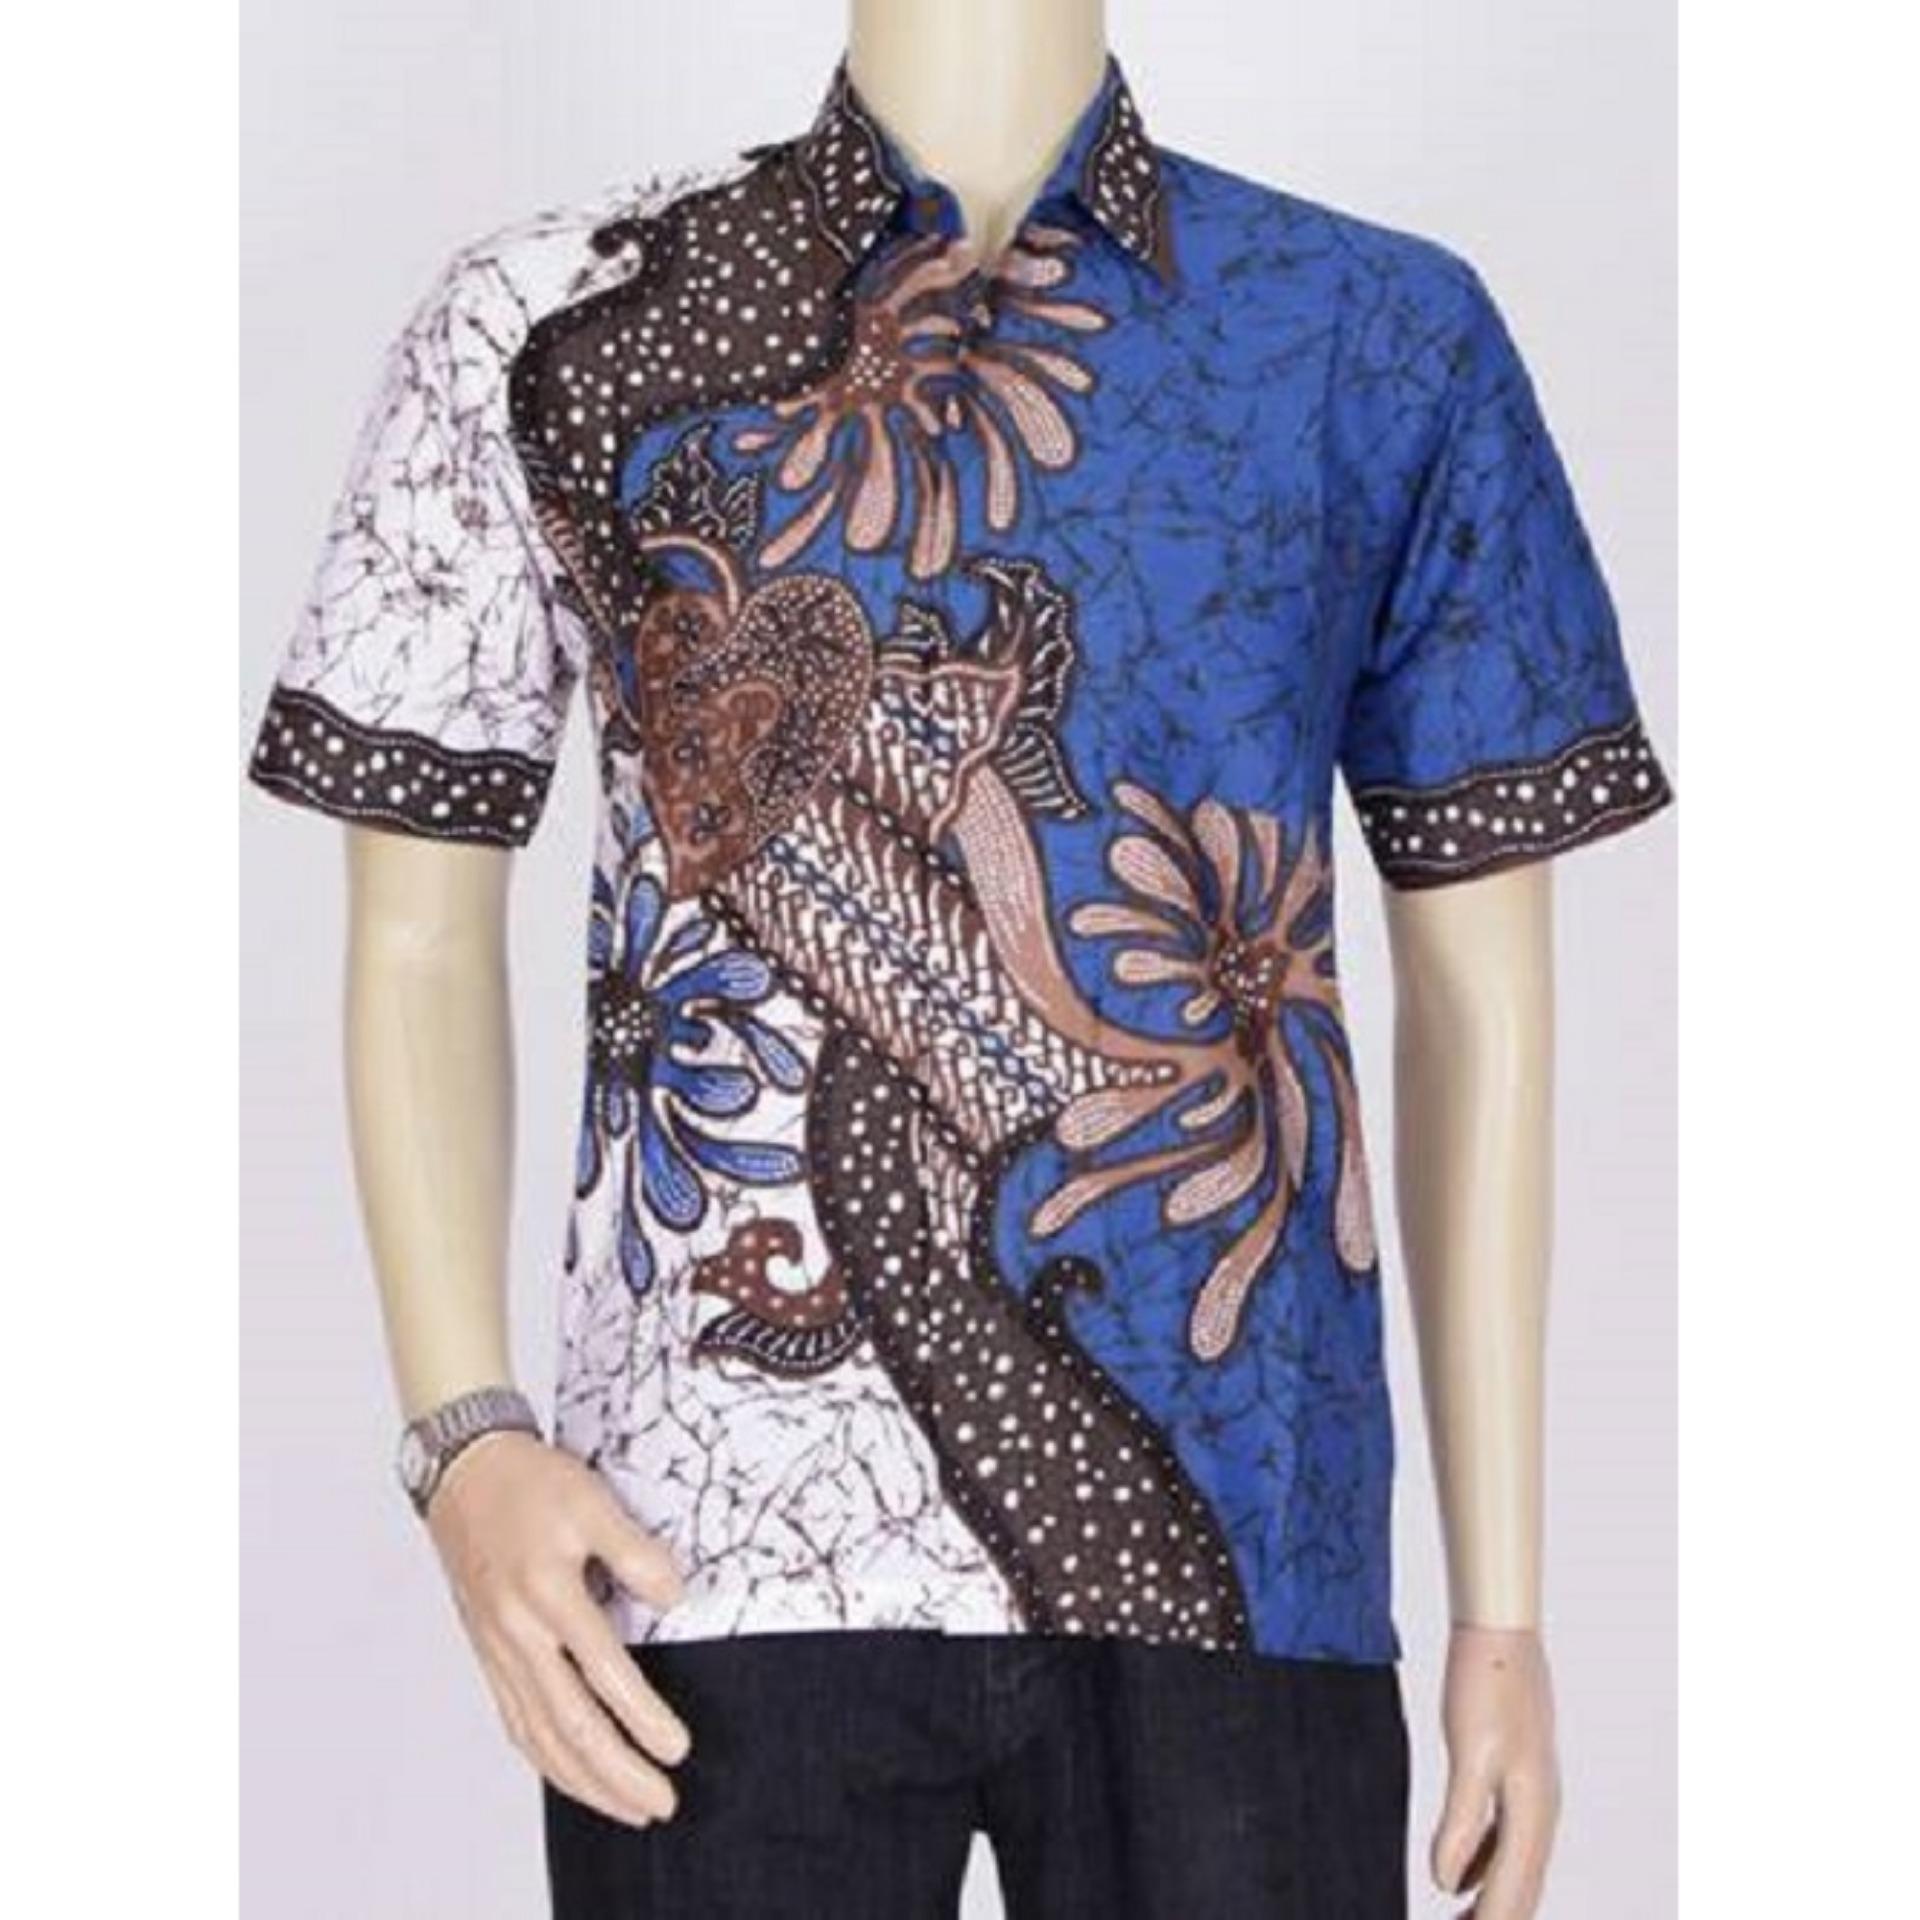 BELI Baju  Kemeja Batik  Modern Pria Khas Pekalongan  Biru Batik  Modern Com